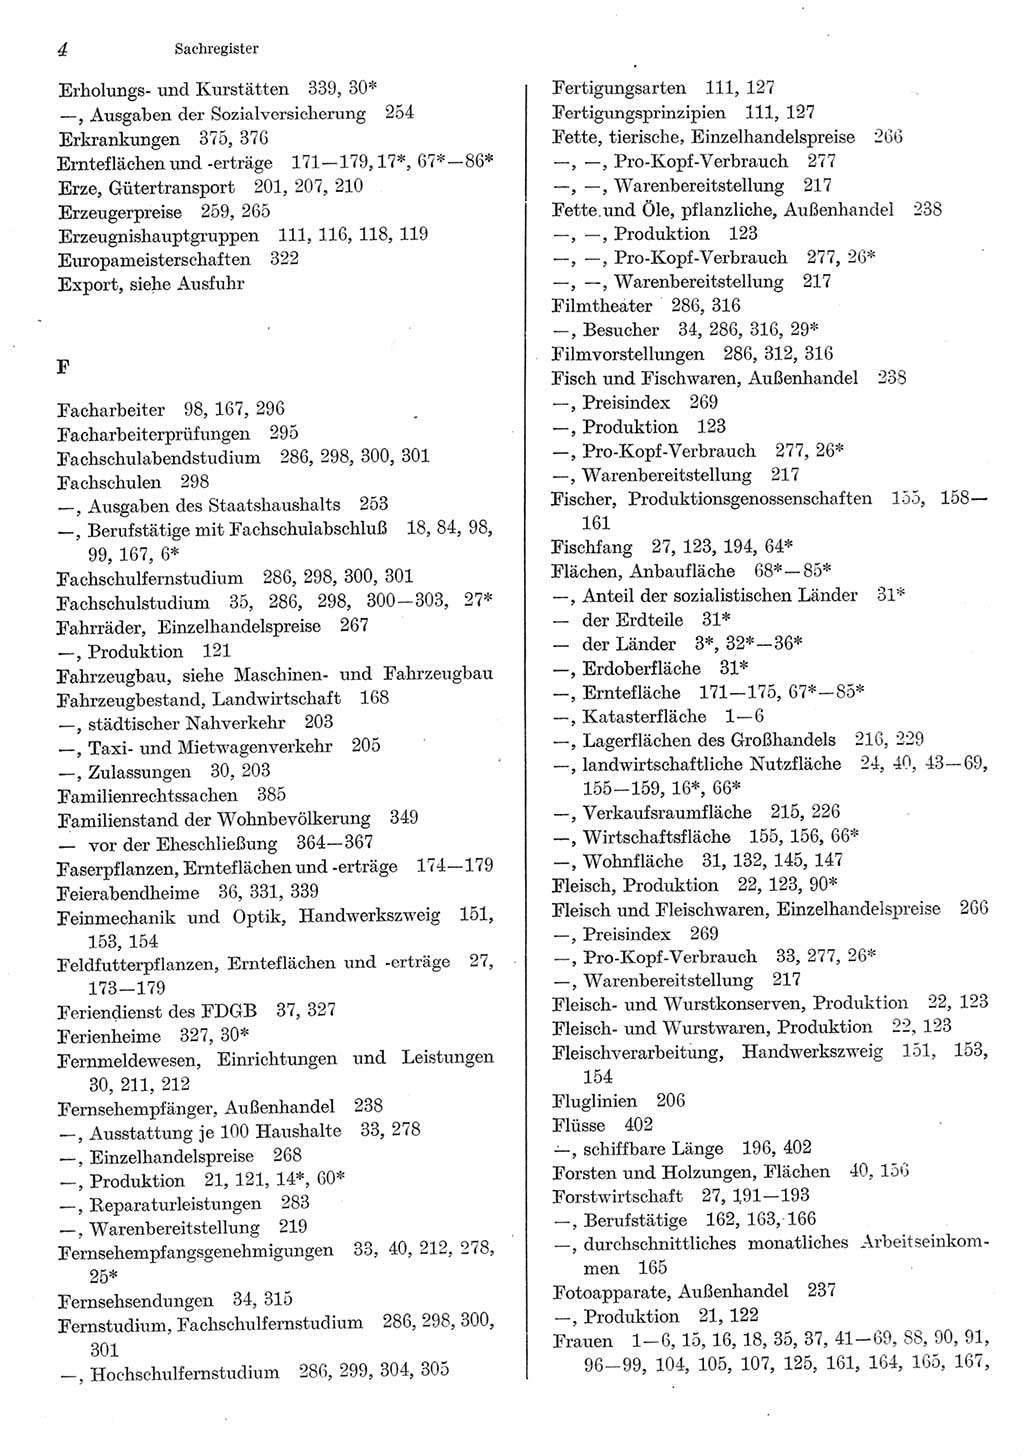 Statistisches Jahrbuch der Deutschen Demokratischen Republik (DDR) 1980, Seite 4 (Stat. Jb. DDR 1980, S. 4)